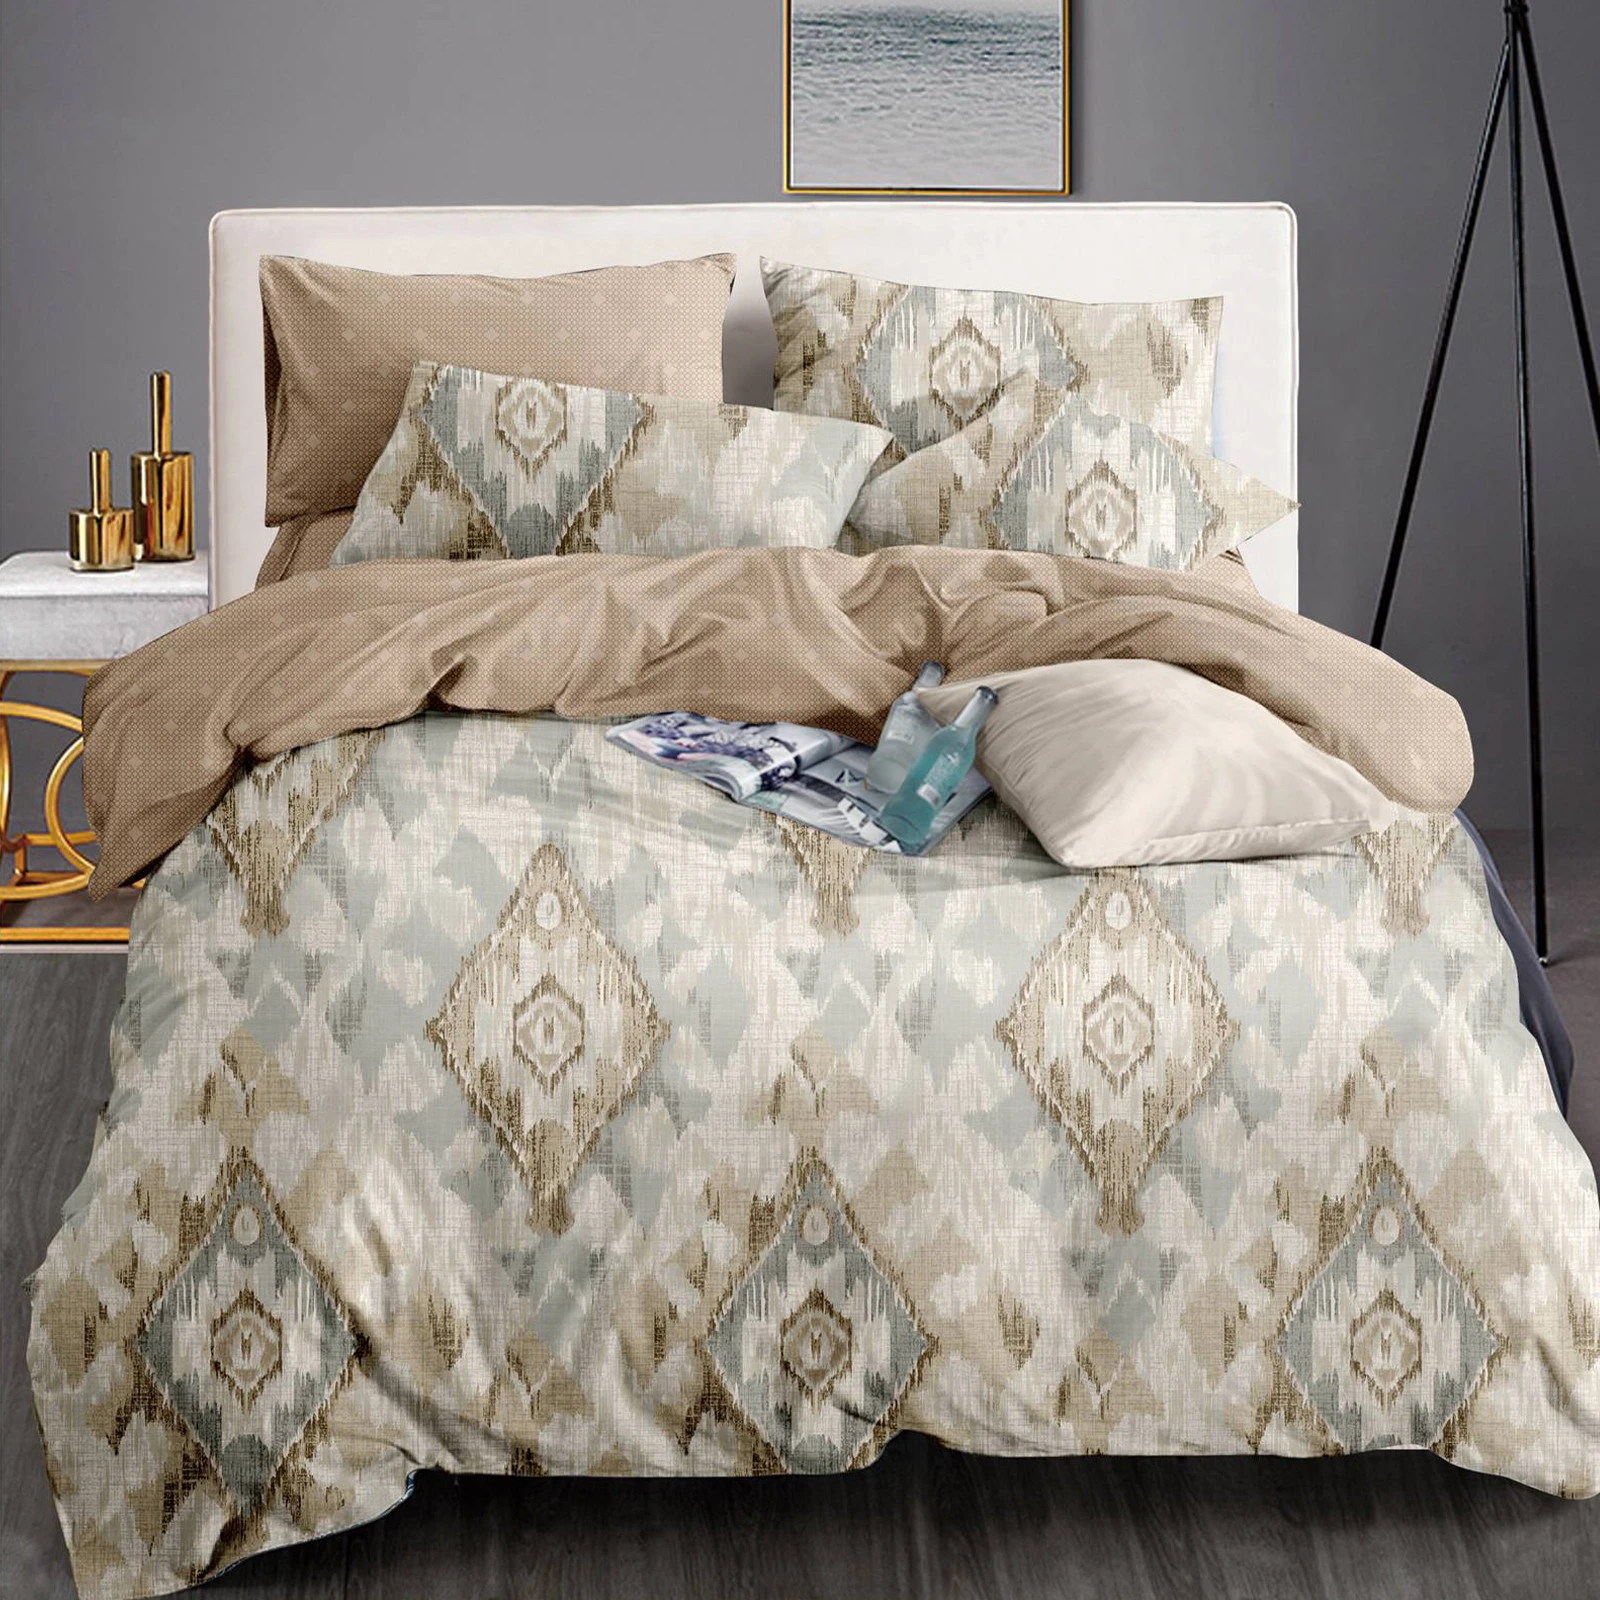 King Size Printed Bedding Comforter Set